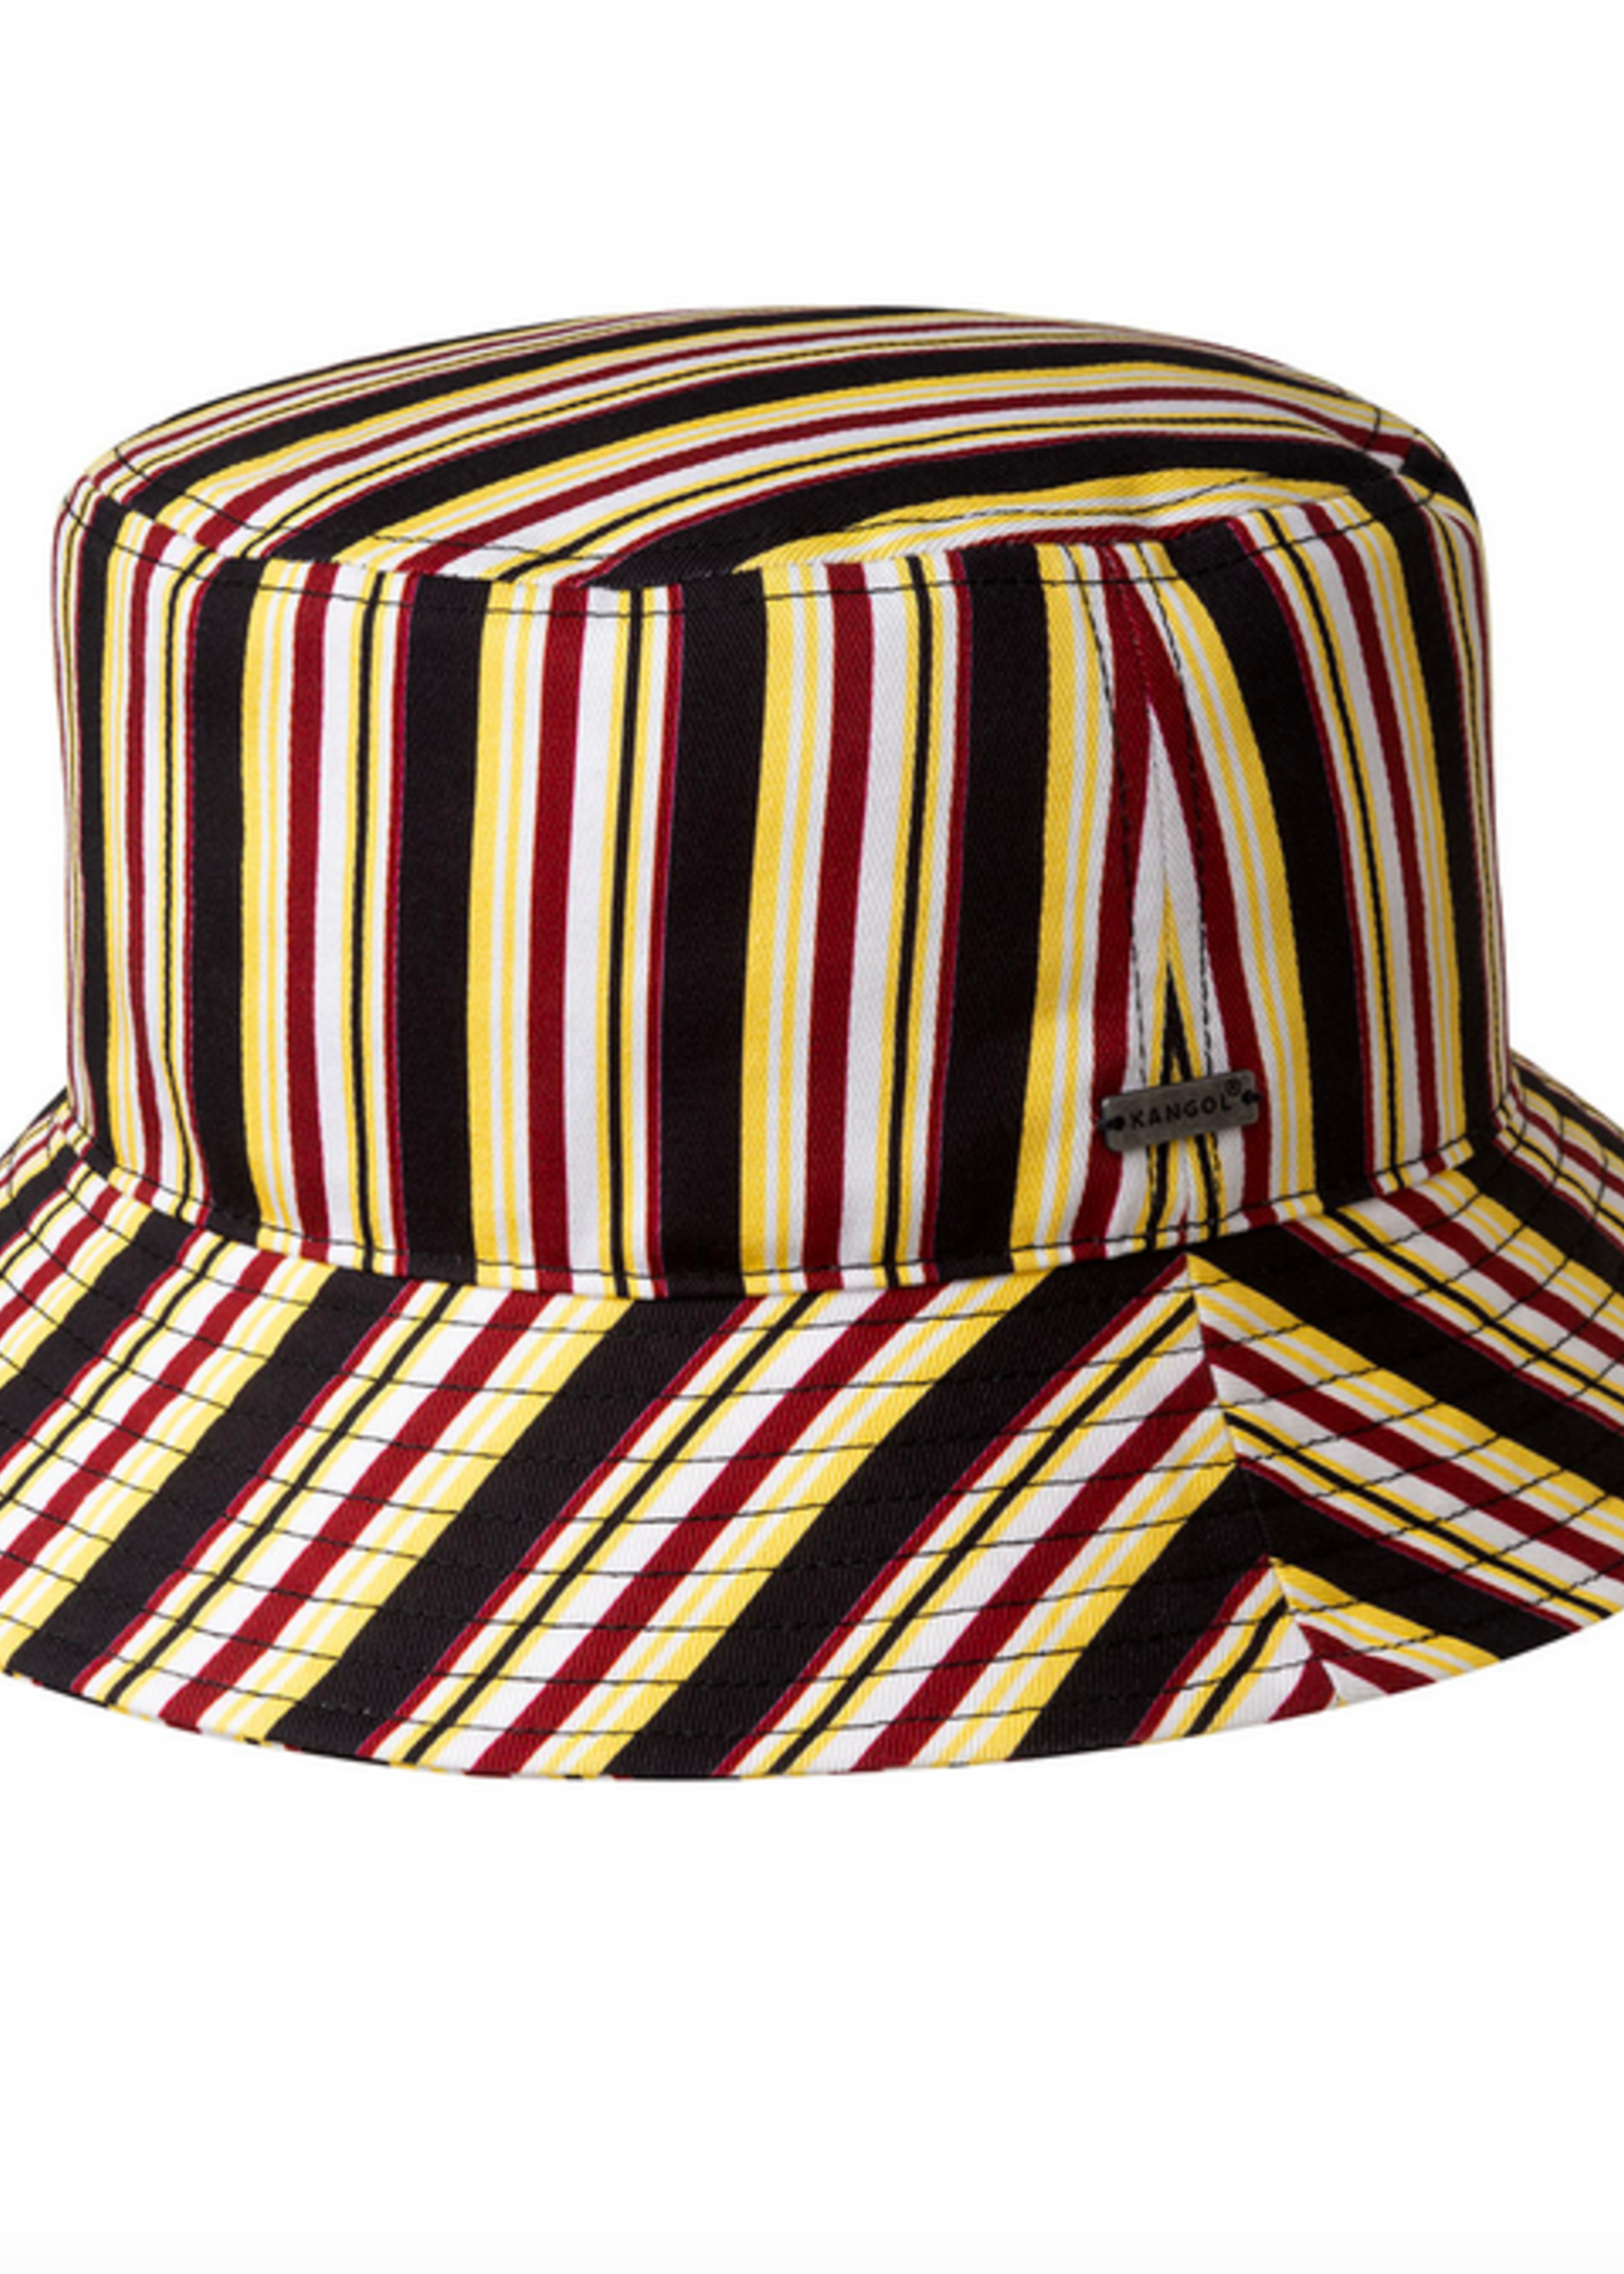 kangol 70s Stripe Bucket Hat s/m